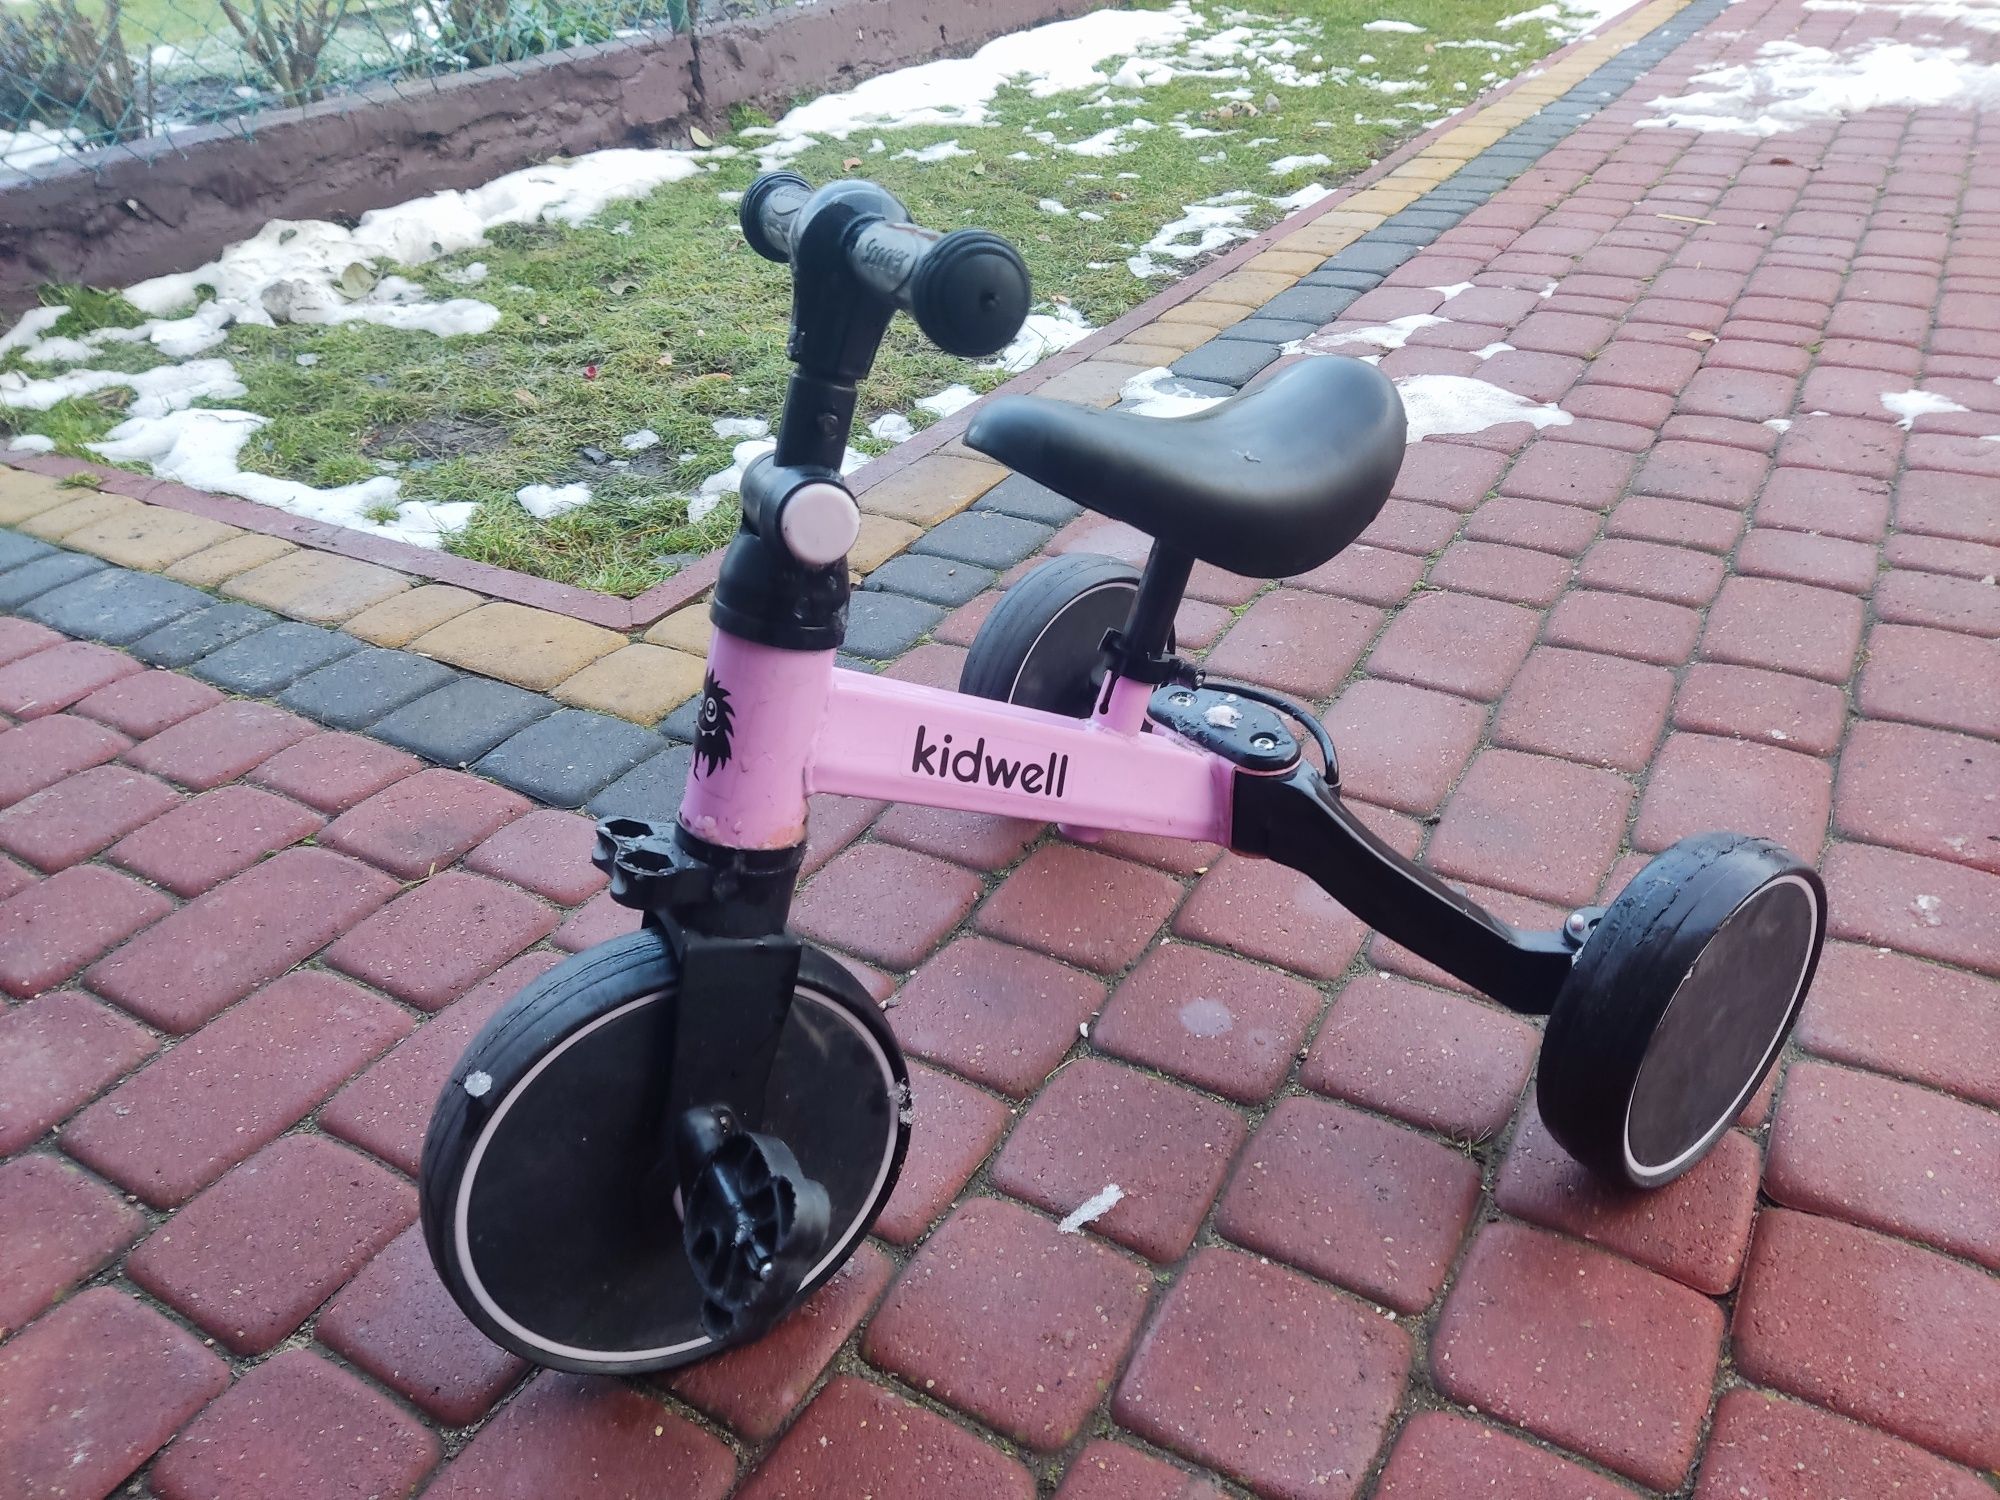 Rowerek składany kidwell dla dzieci